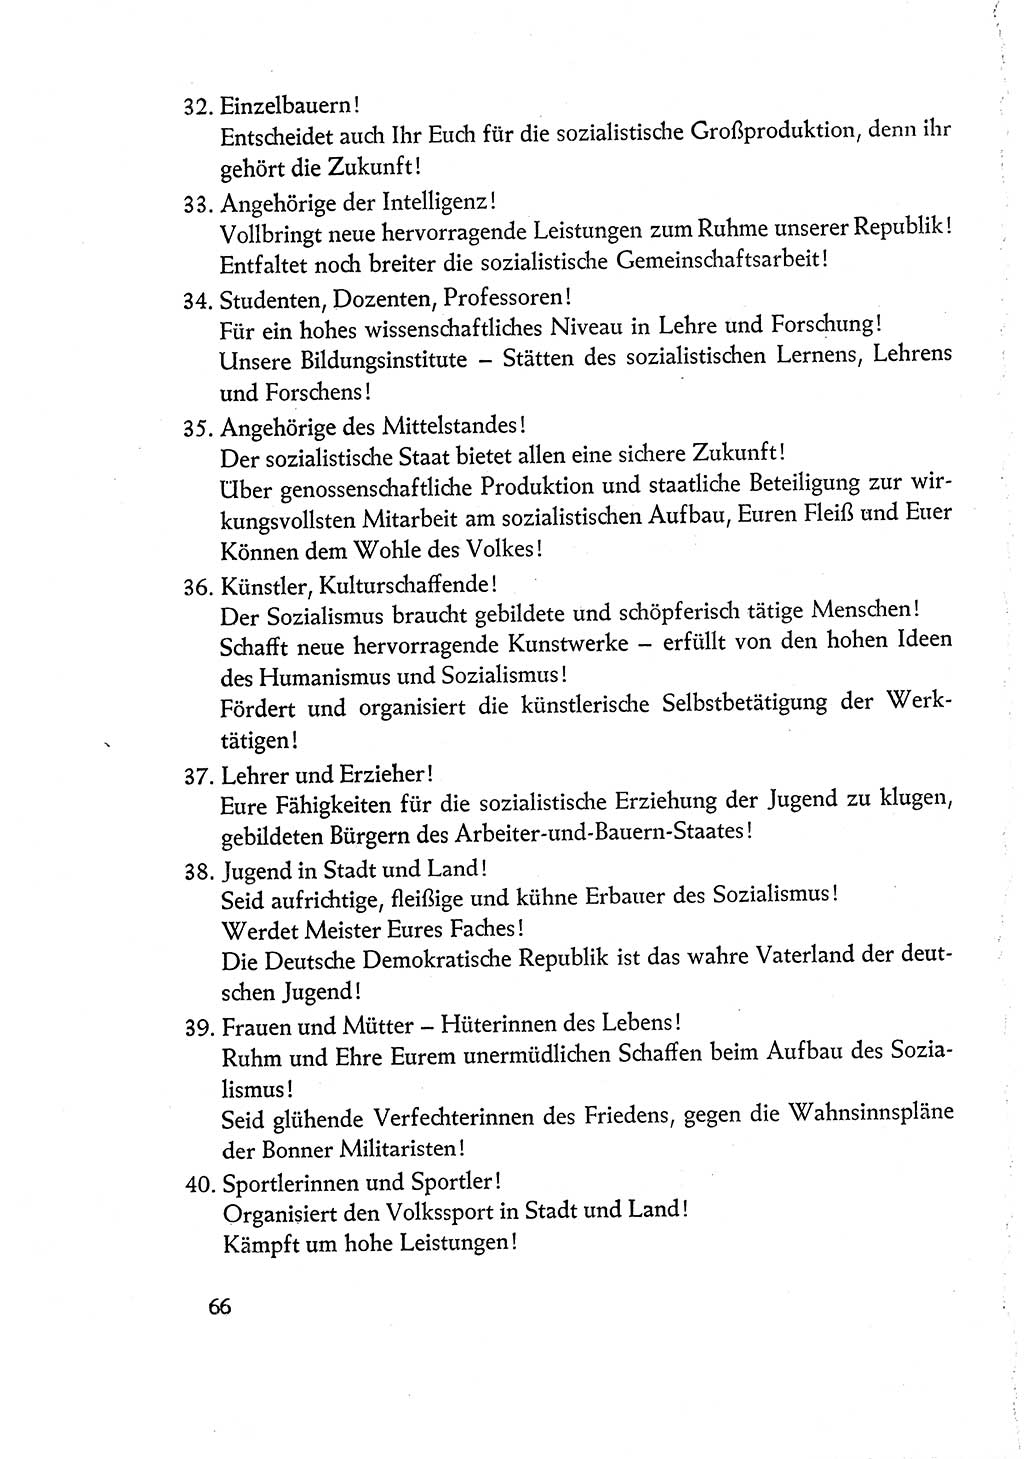 Dokumente der Sozialistischen Einheitspartei Deutschlands (SED) [Deutsche Demokratische Republik (DDR)] 1960-1961, Seite 66 (Dok. SED DDR 1960-1961, S. 66)